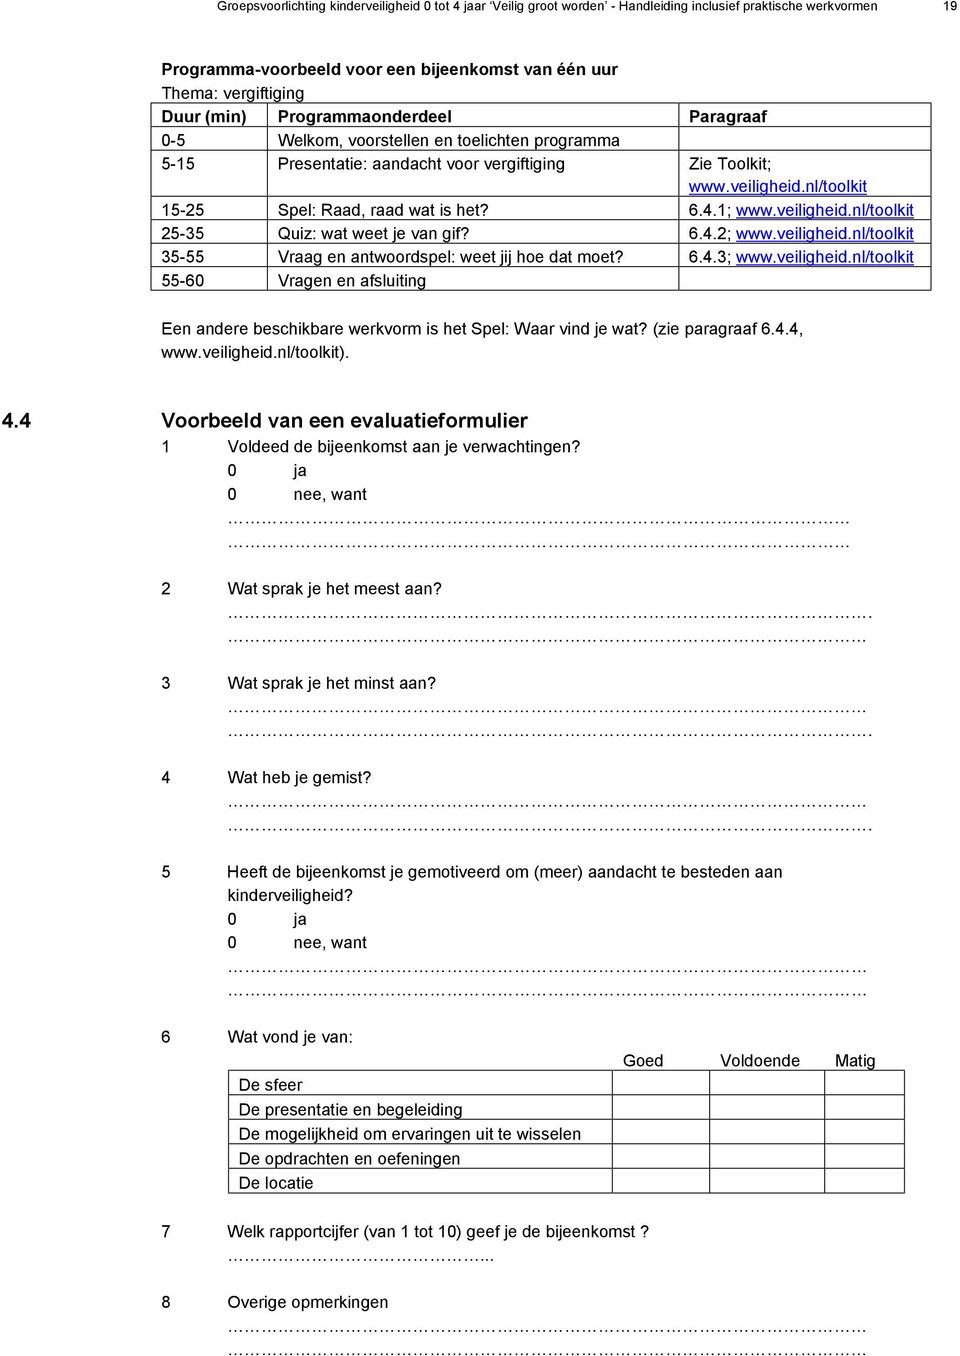 nl/toolkit 15-25 Spel: Raad, raad wat is het? 6.4.1; www.veiligheid.nl/toolkit 25-35 Quiz: wat weet je van gif? 6.4.2; www.veiligheid.nl/toolkit 35-55 Vraag en antwoordspel: weet jij hoe dat moet? 6.4.3; www.